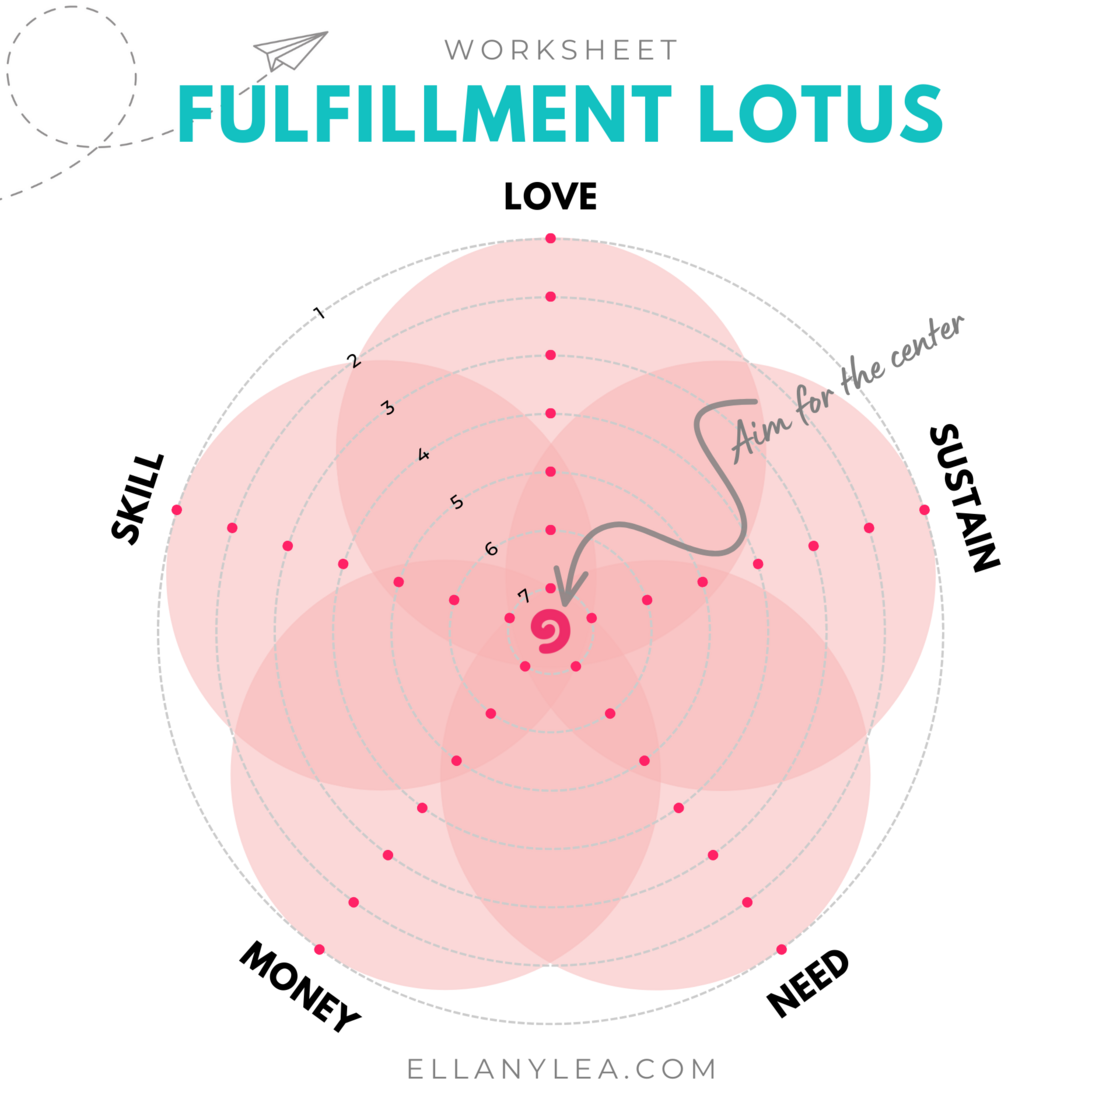 Fulfillment Lotus - Worksheet